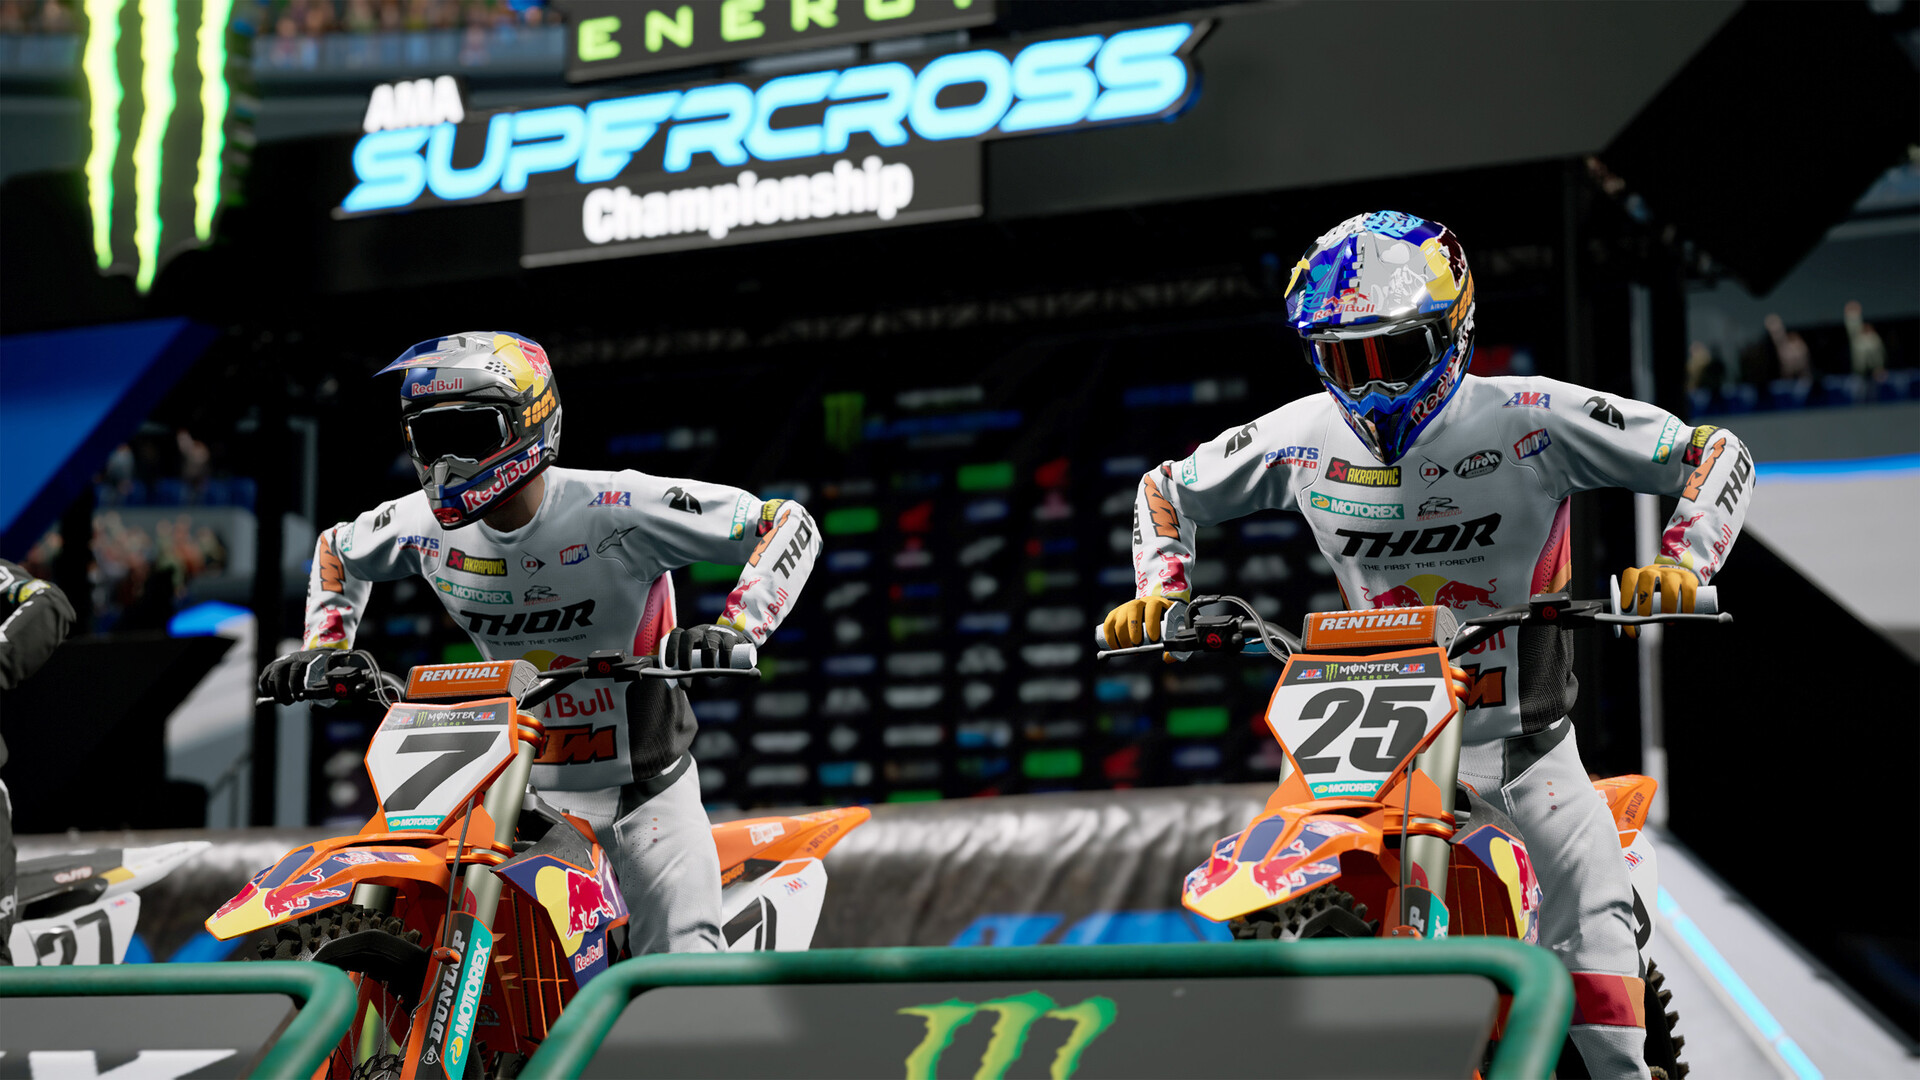 Monster Energy Supercross 6 é bom game de corrida de motos